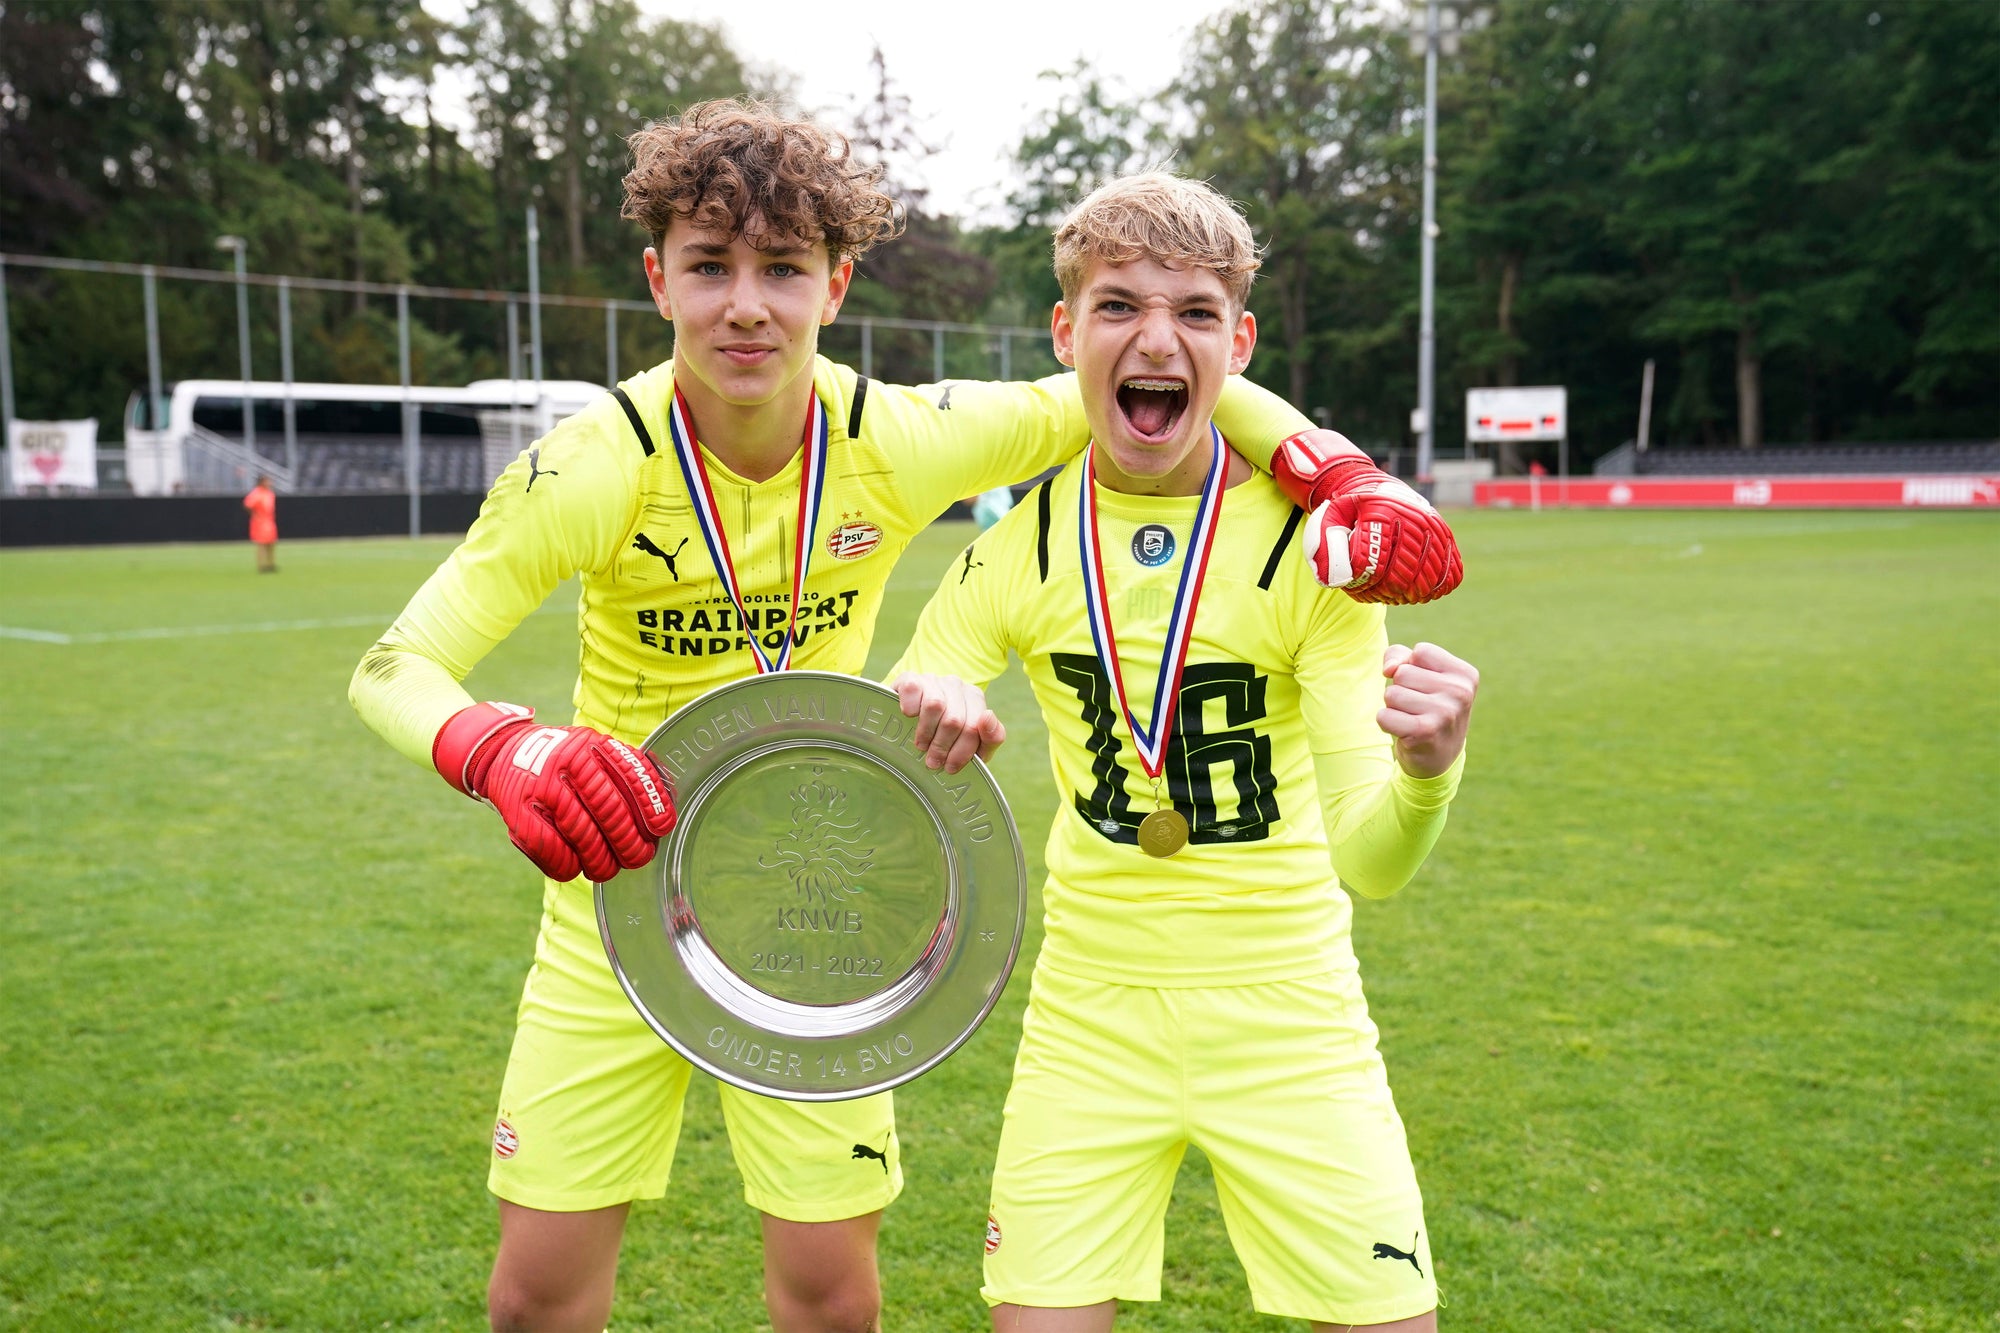 Gripmode-Athlet Kane Aerts feiert mit der U14-Mannschaft des PSV Eindhoven großen Erfolg